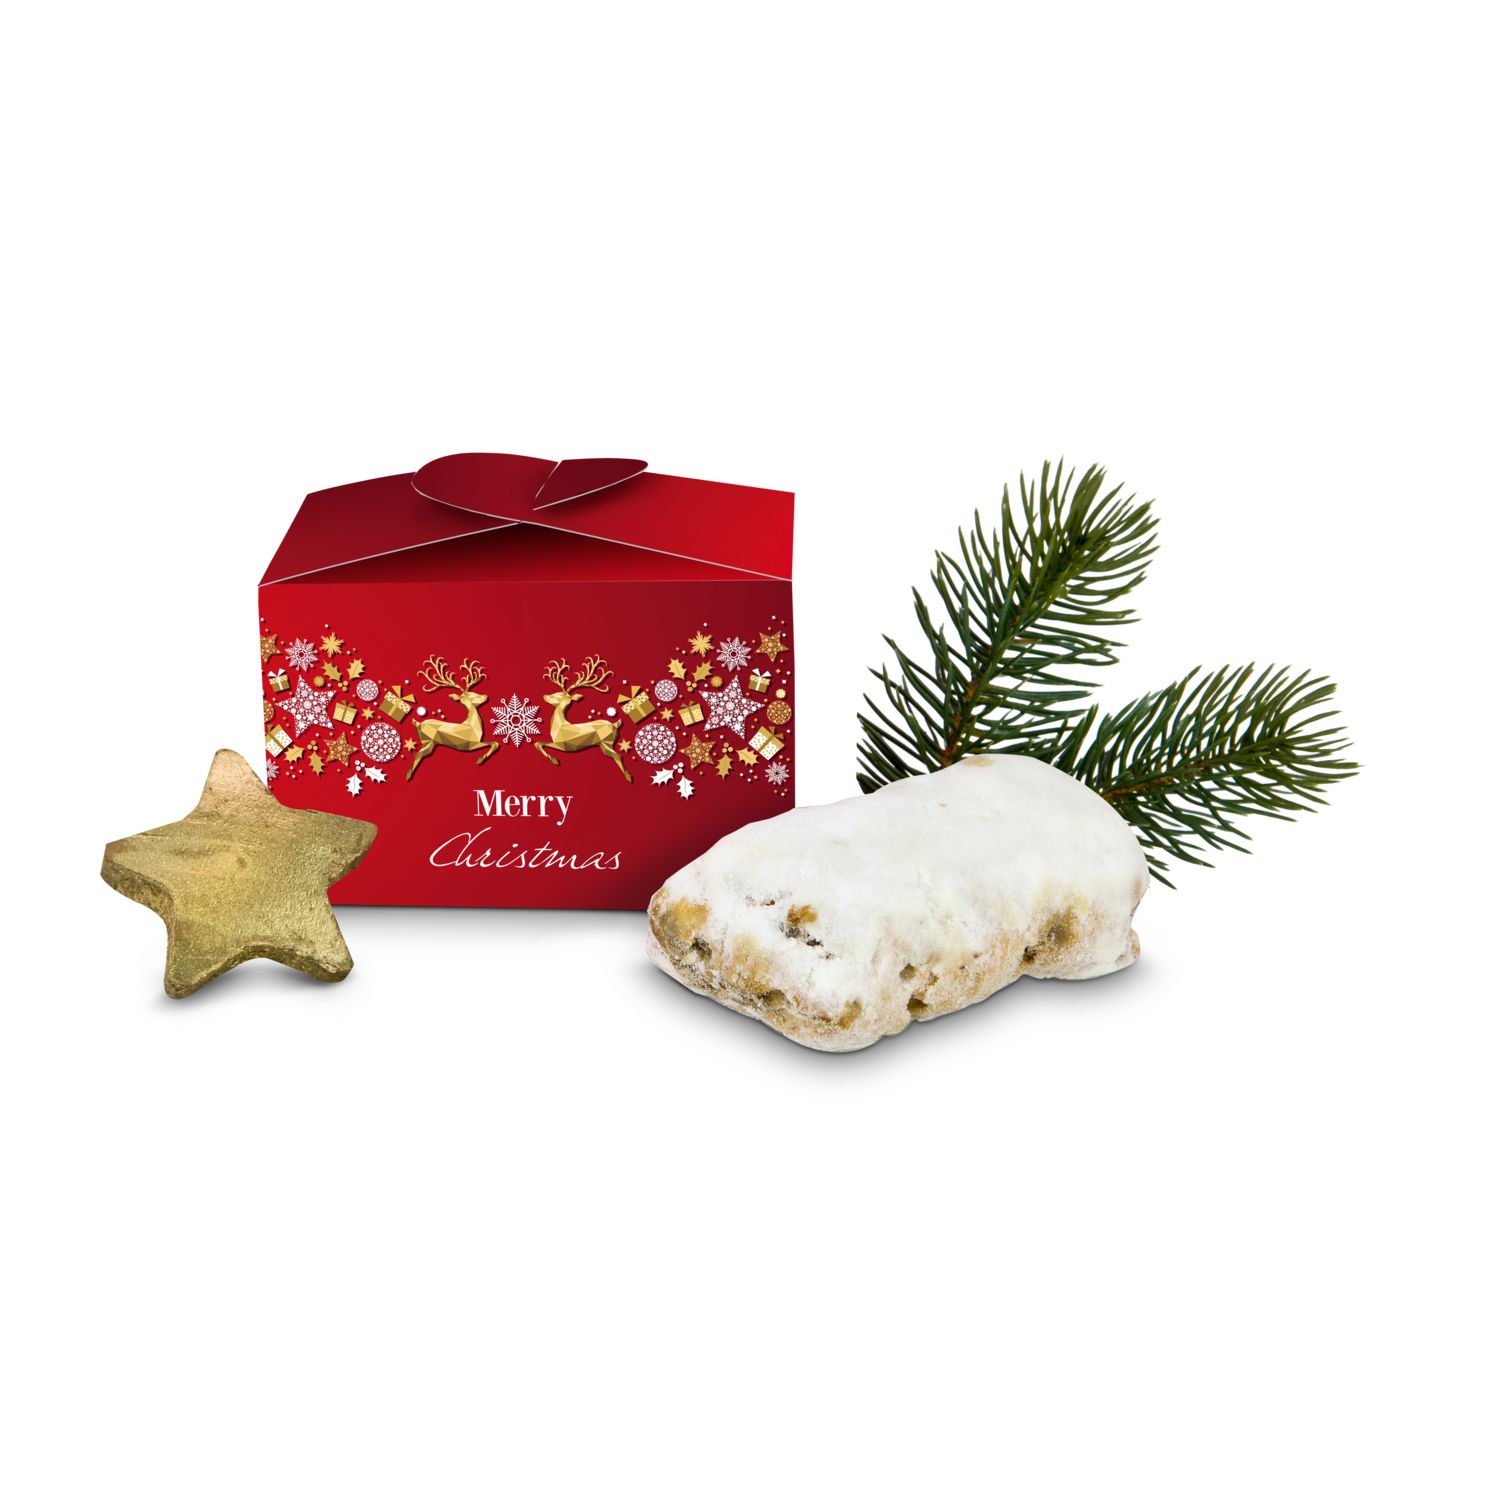 Geschenkartikel / Präsentartikel: Mini-Stollen Merry Christmas 2K2053a